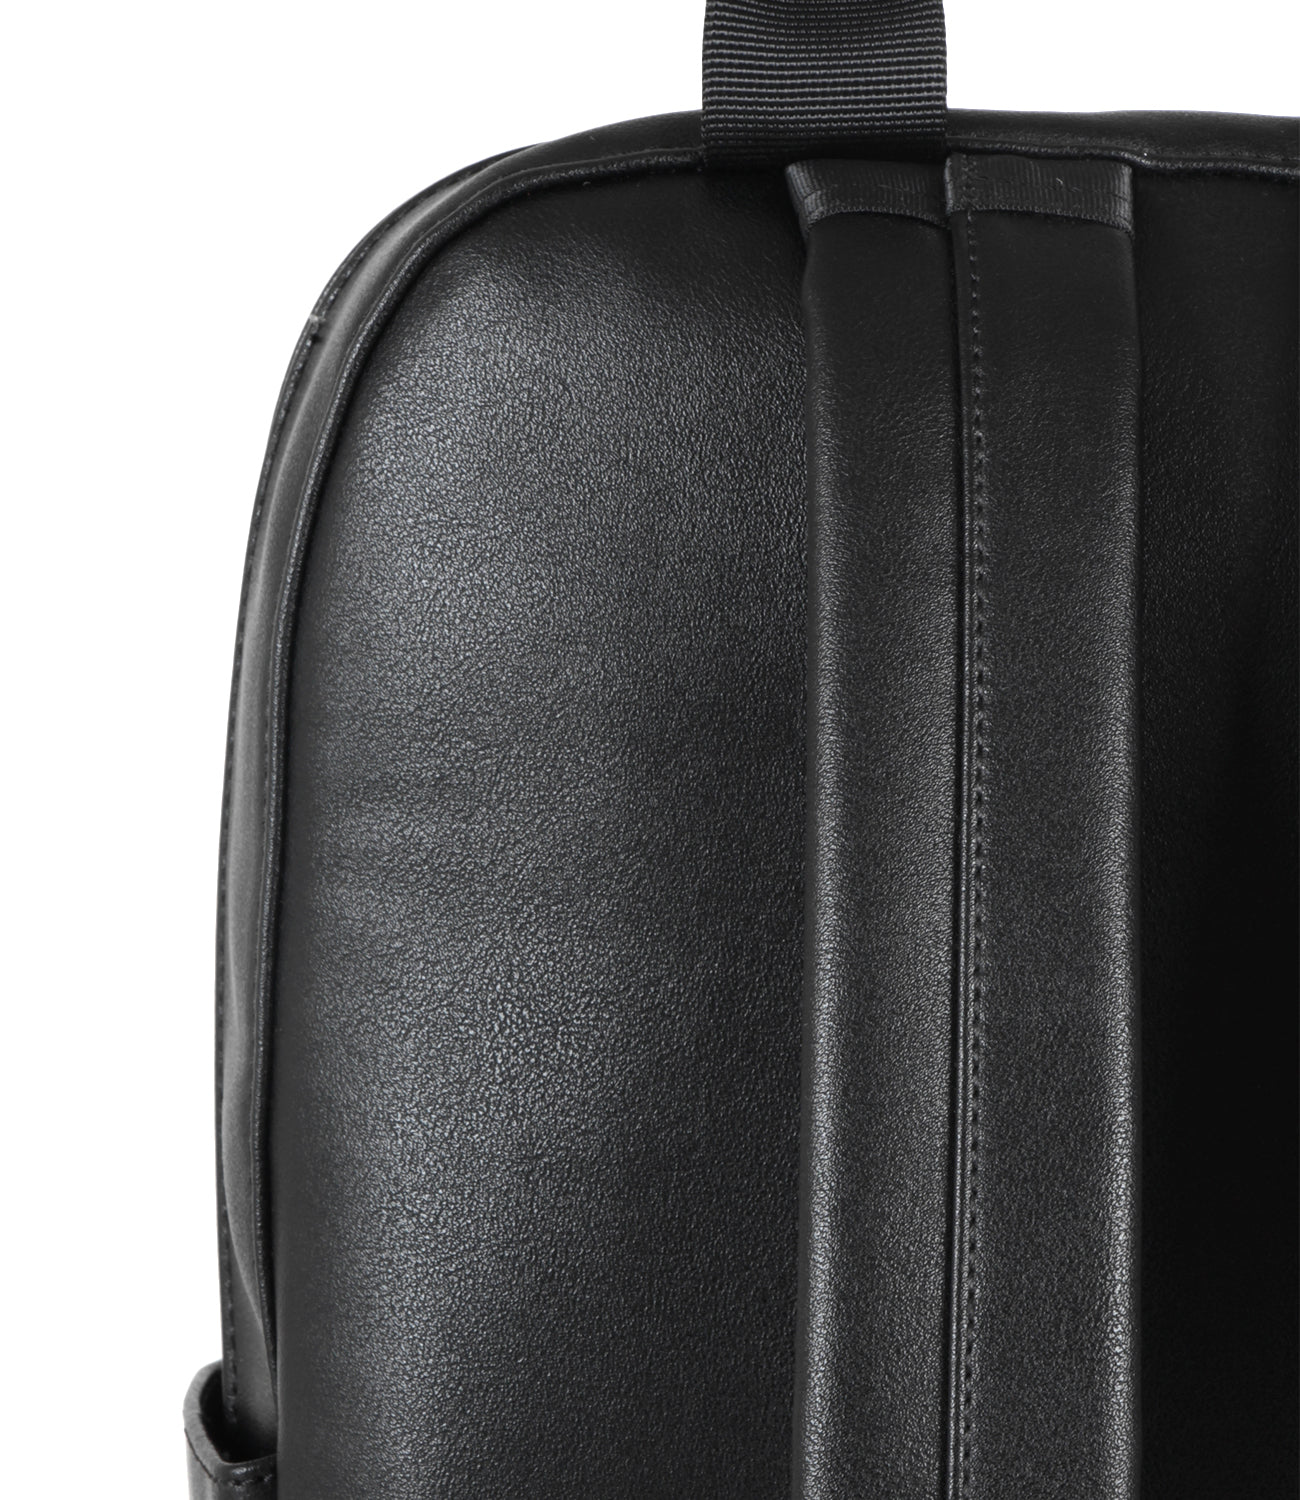 Moleskine | Classic backpack